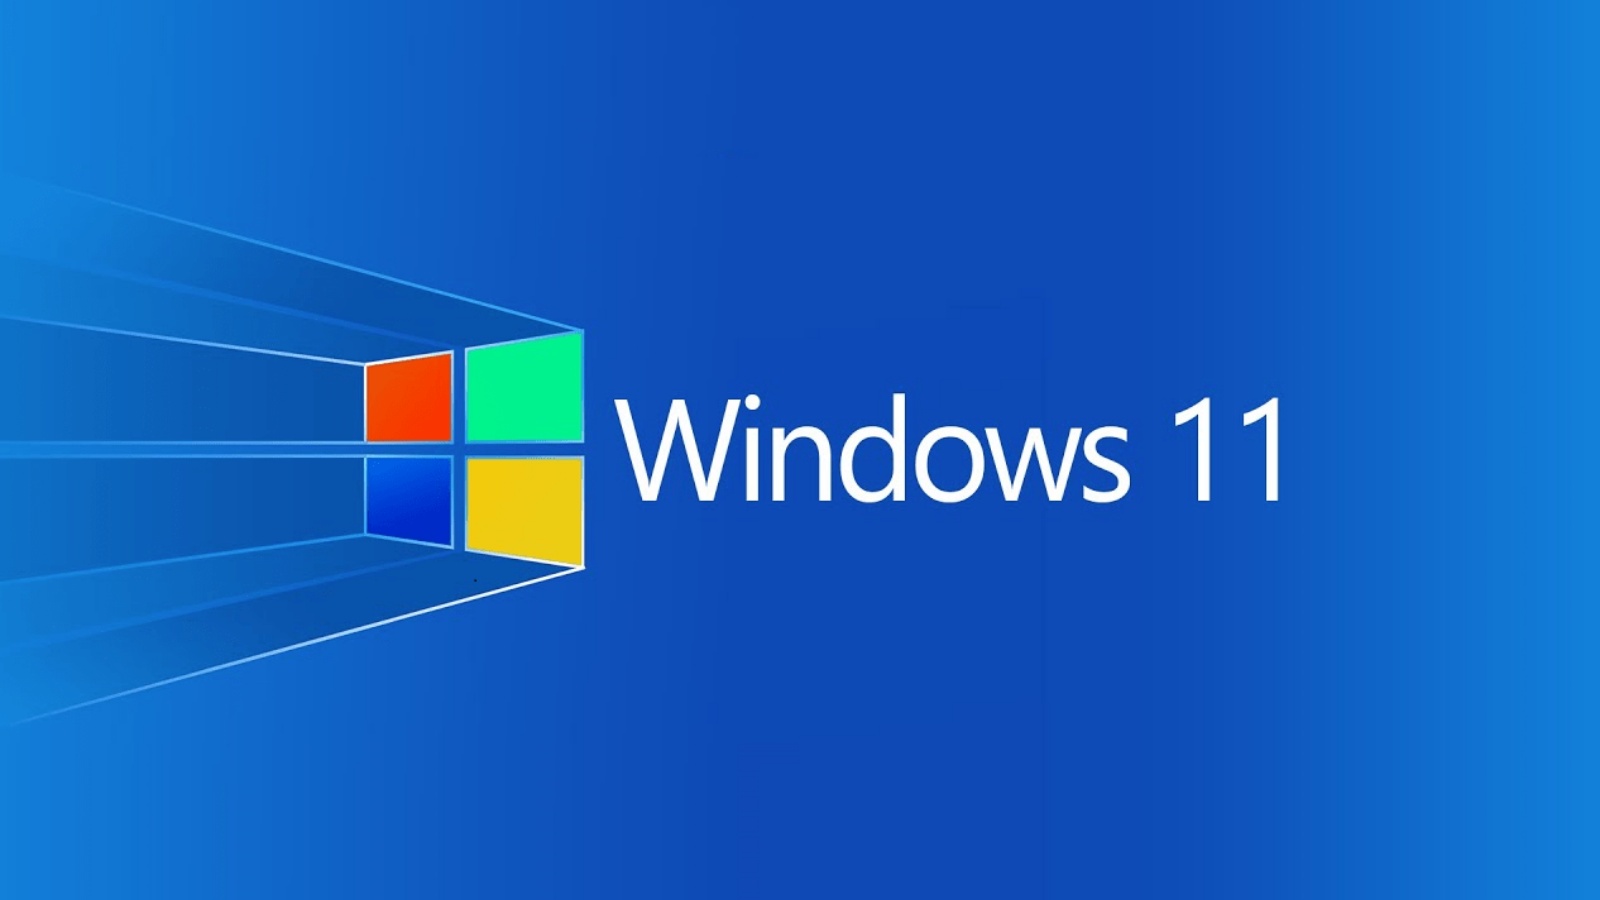 Windows 11 Tärkeitä virallisia tietoja Microsoft Attention PC People